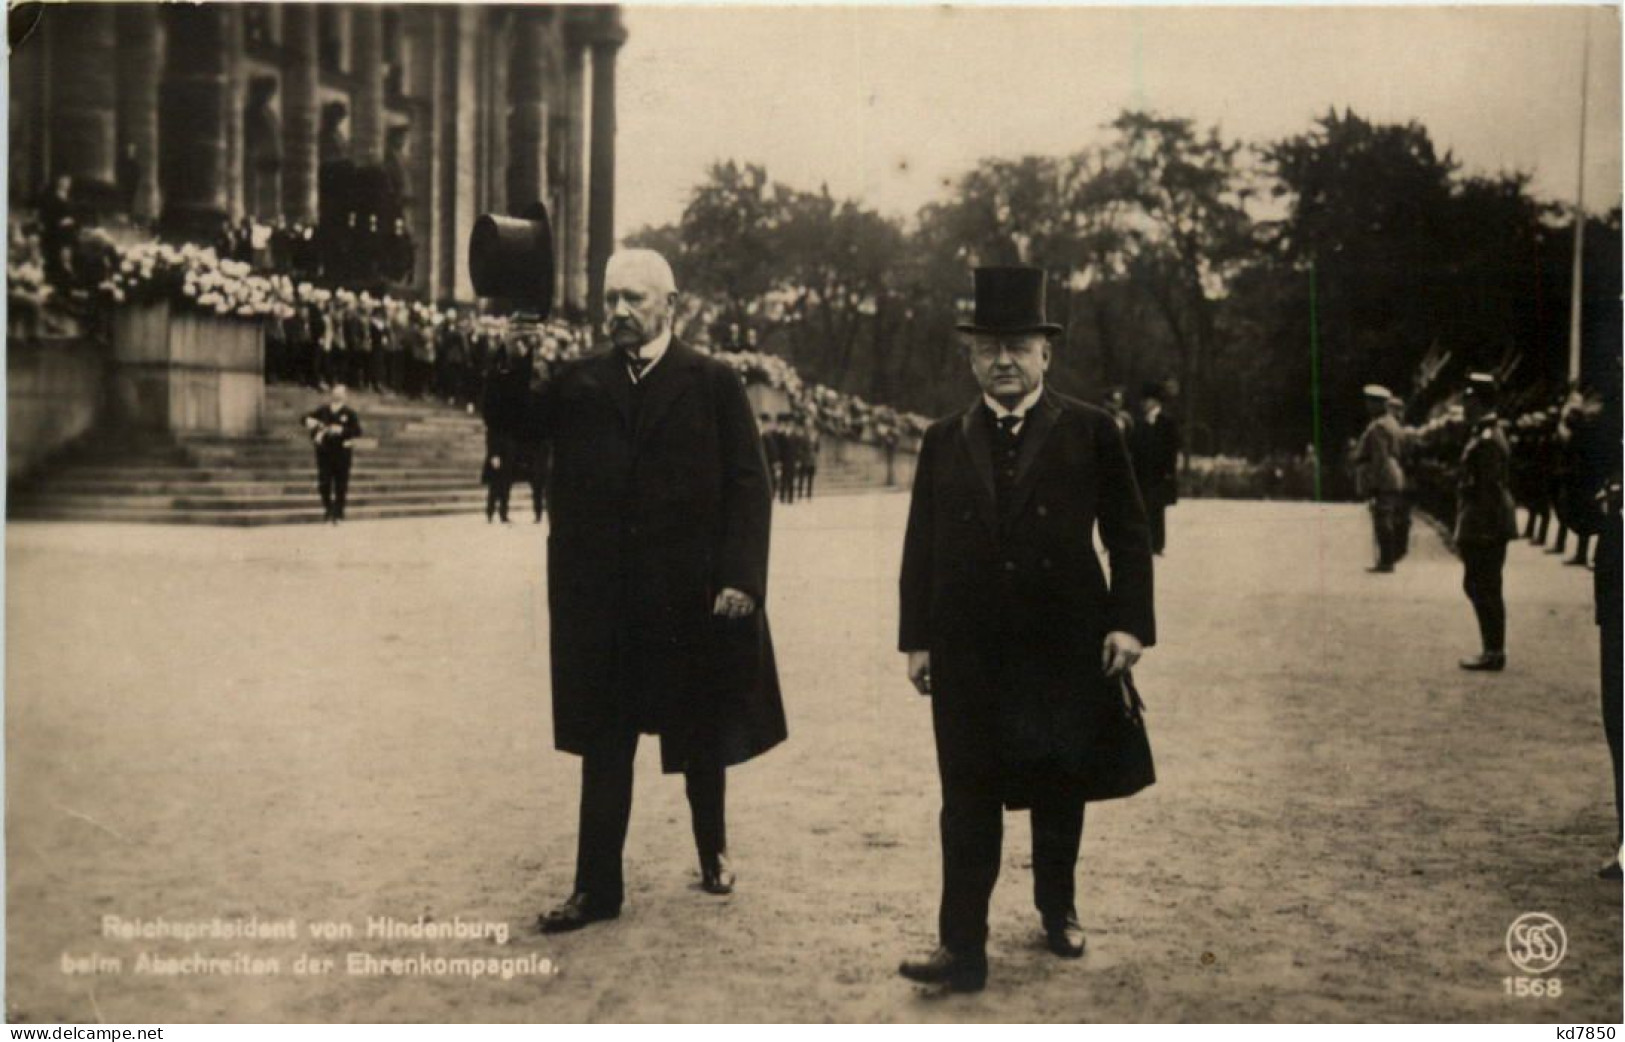 Reichspräsident Von Hindenburg Beim Abschreiten Der Ehrenkompagnie - People